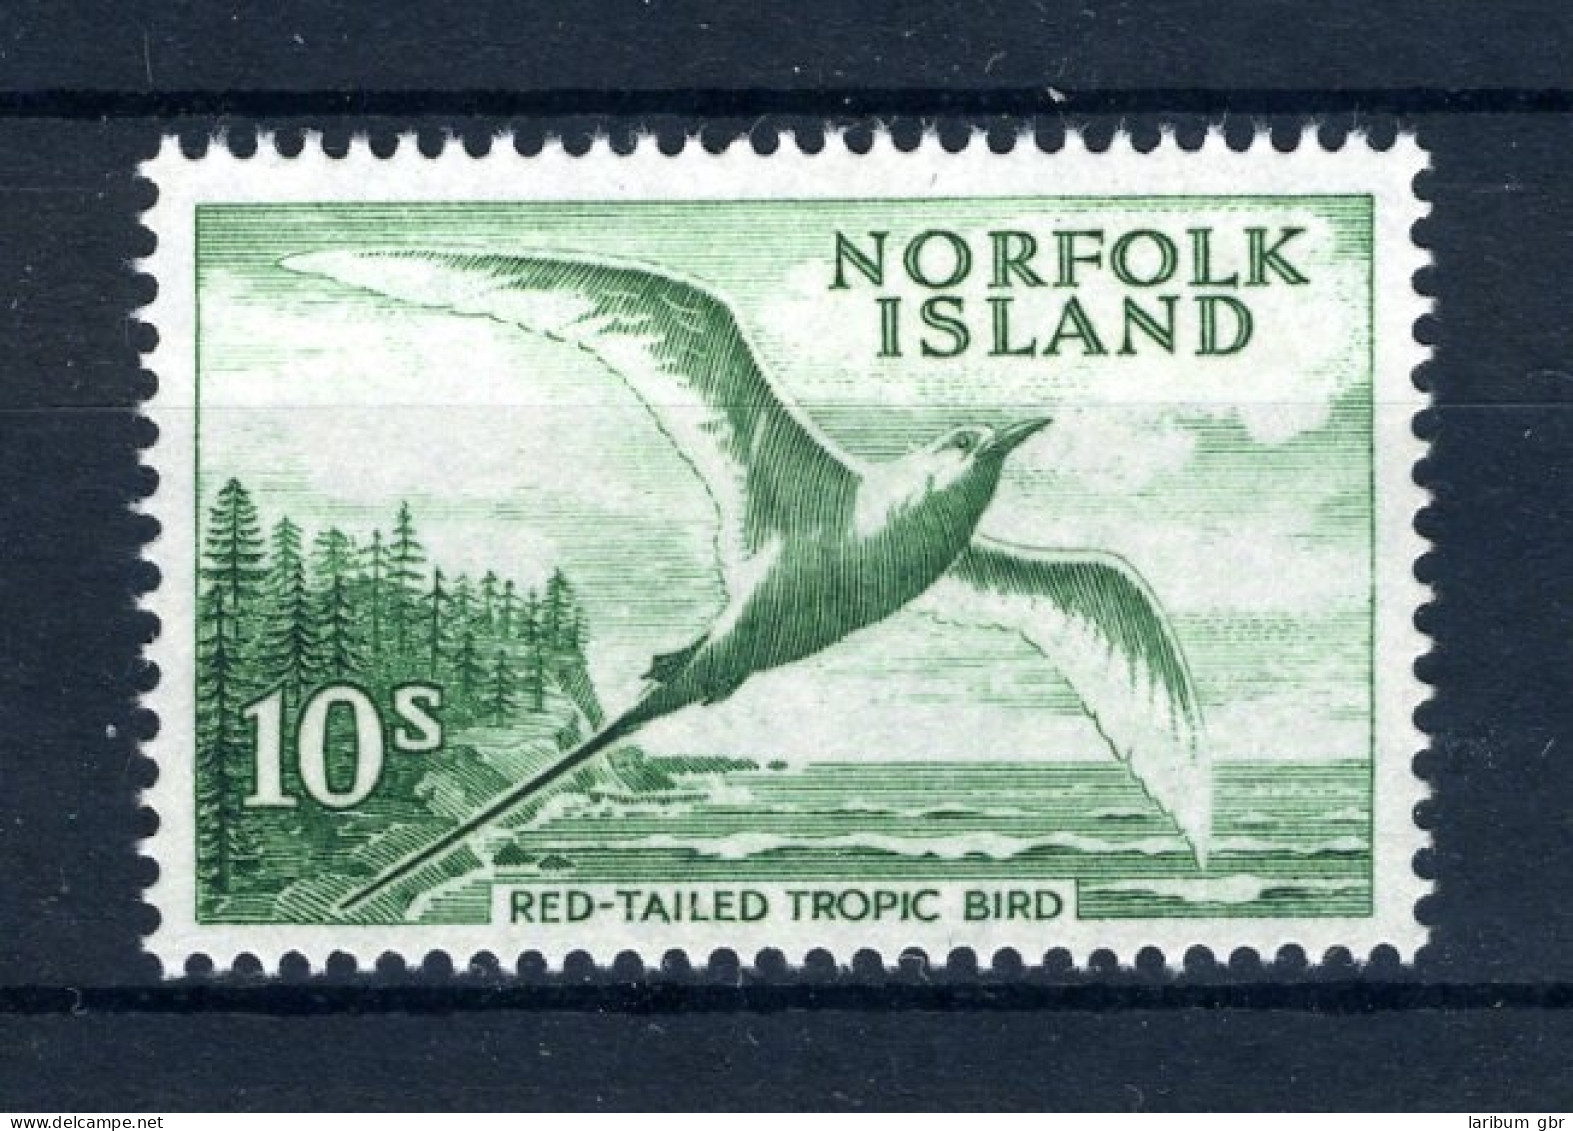 Norfolk Inseln 36 Postfrisch Seevögel #JK347 - Ile Norfolk